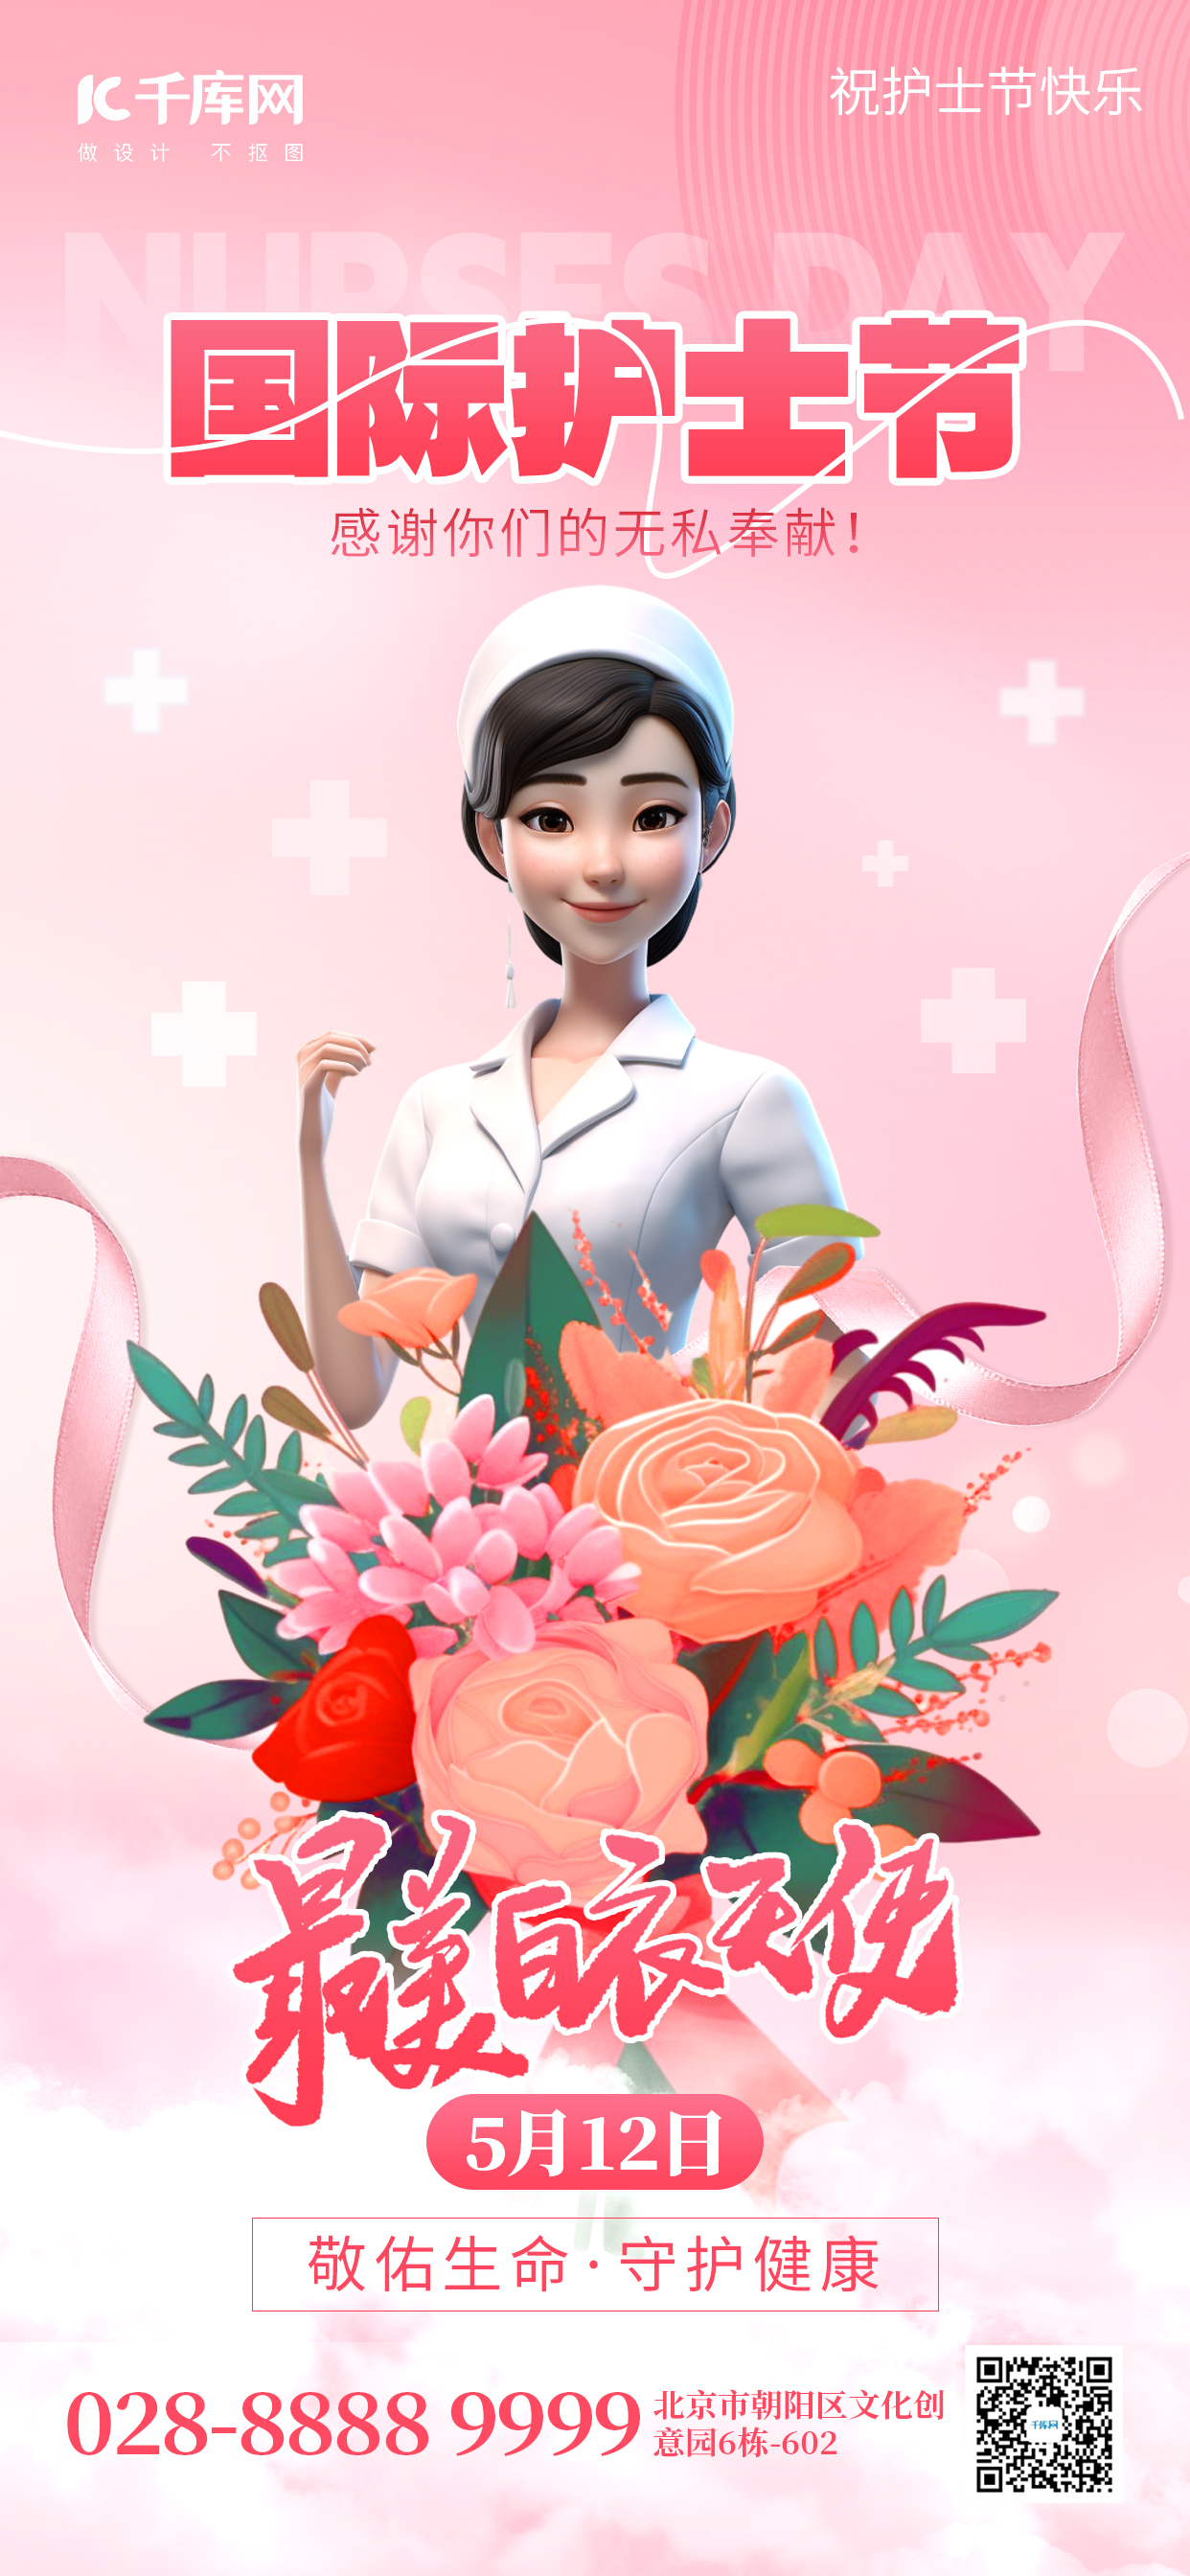 护士节5.12白衣天使粉色创意手机海报海报模版图片